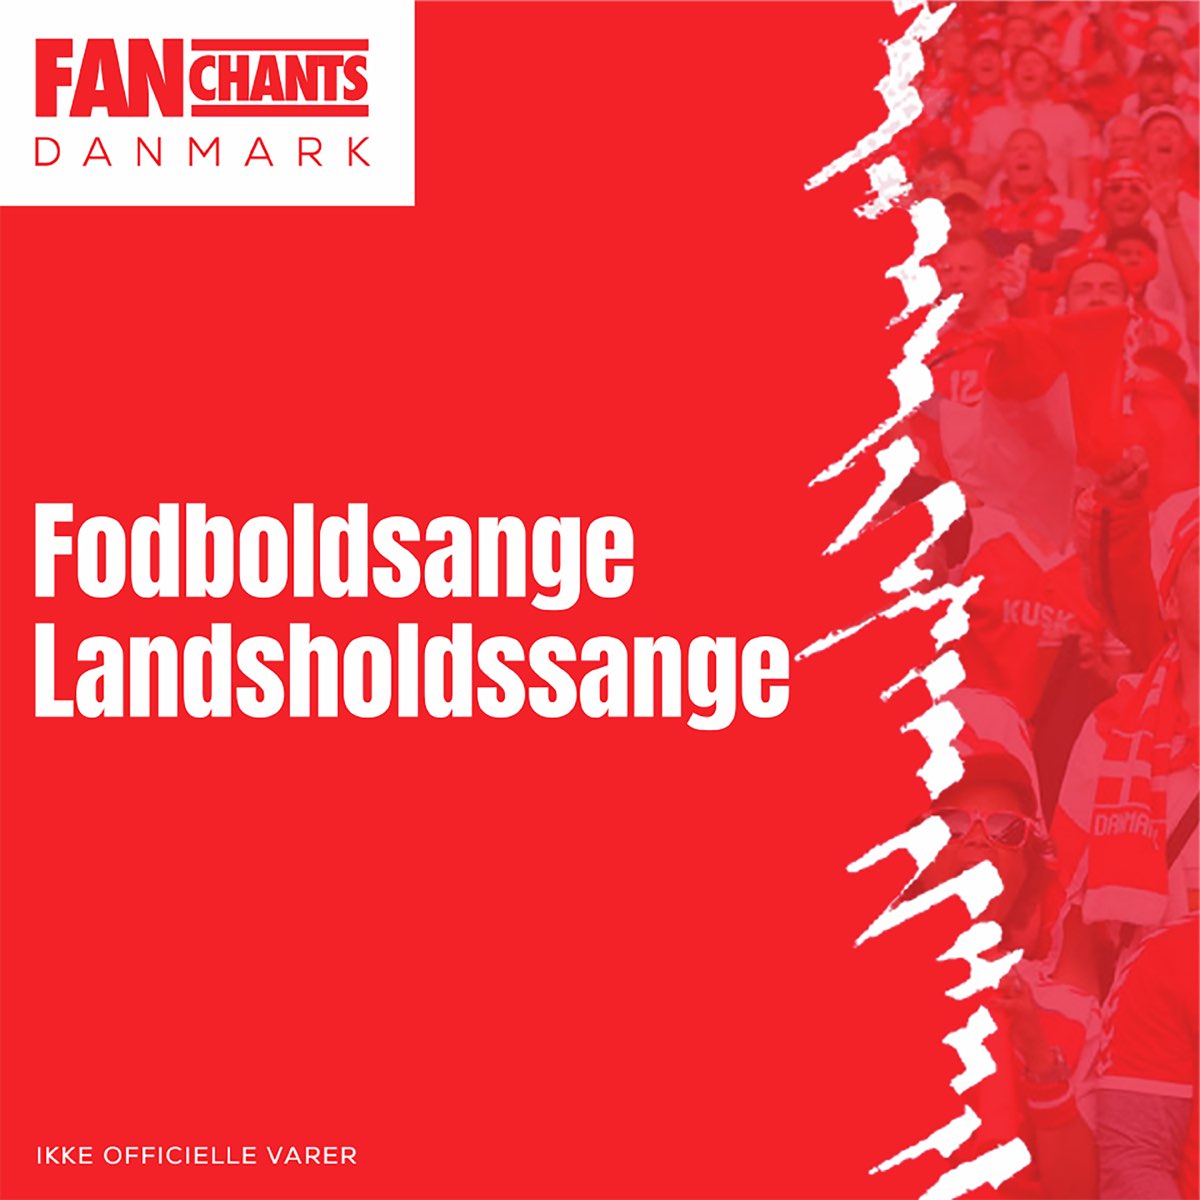 Fodboldsange - Landsholdssange - Album by Fanchants & Danmark Football  Songs - Apple Music